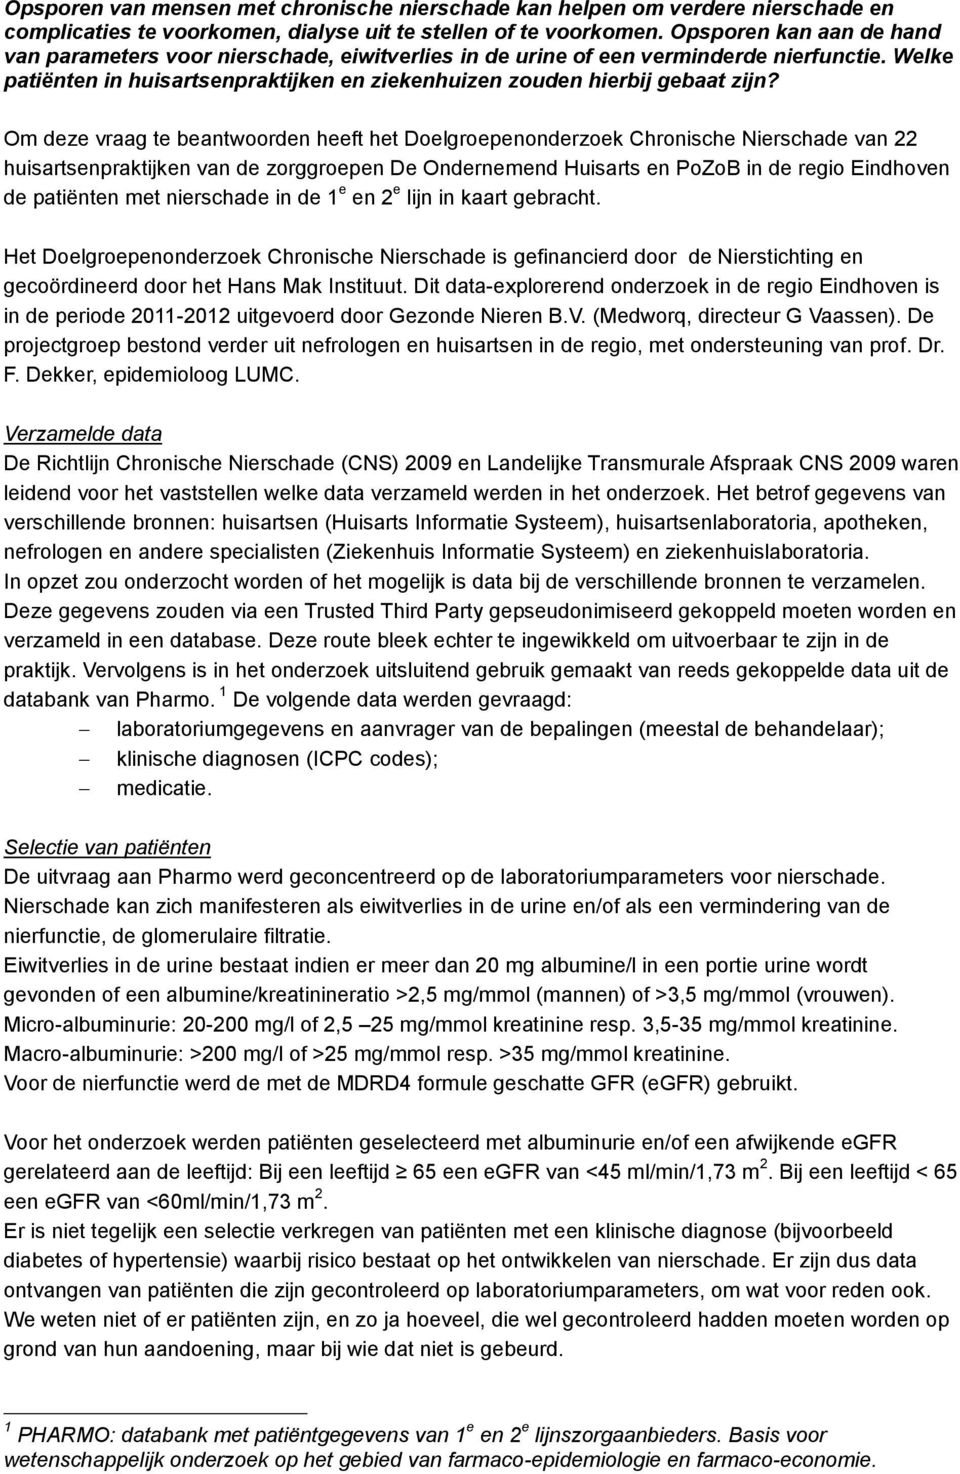 Om deze vraag te beantwoorden heeft het Doelgroepenonderzoek Chronische Nierschade van 22 huisartsenpraktijken van de zorggroepen De Ondernemend Huisarts en PoZoB in de regio Eindhoven de patiënten